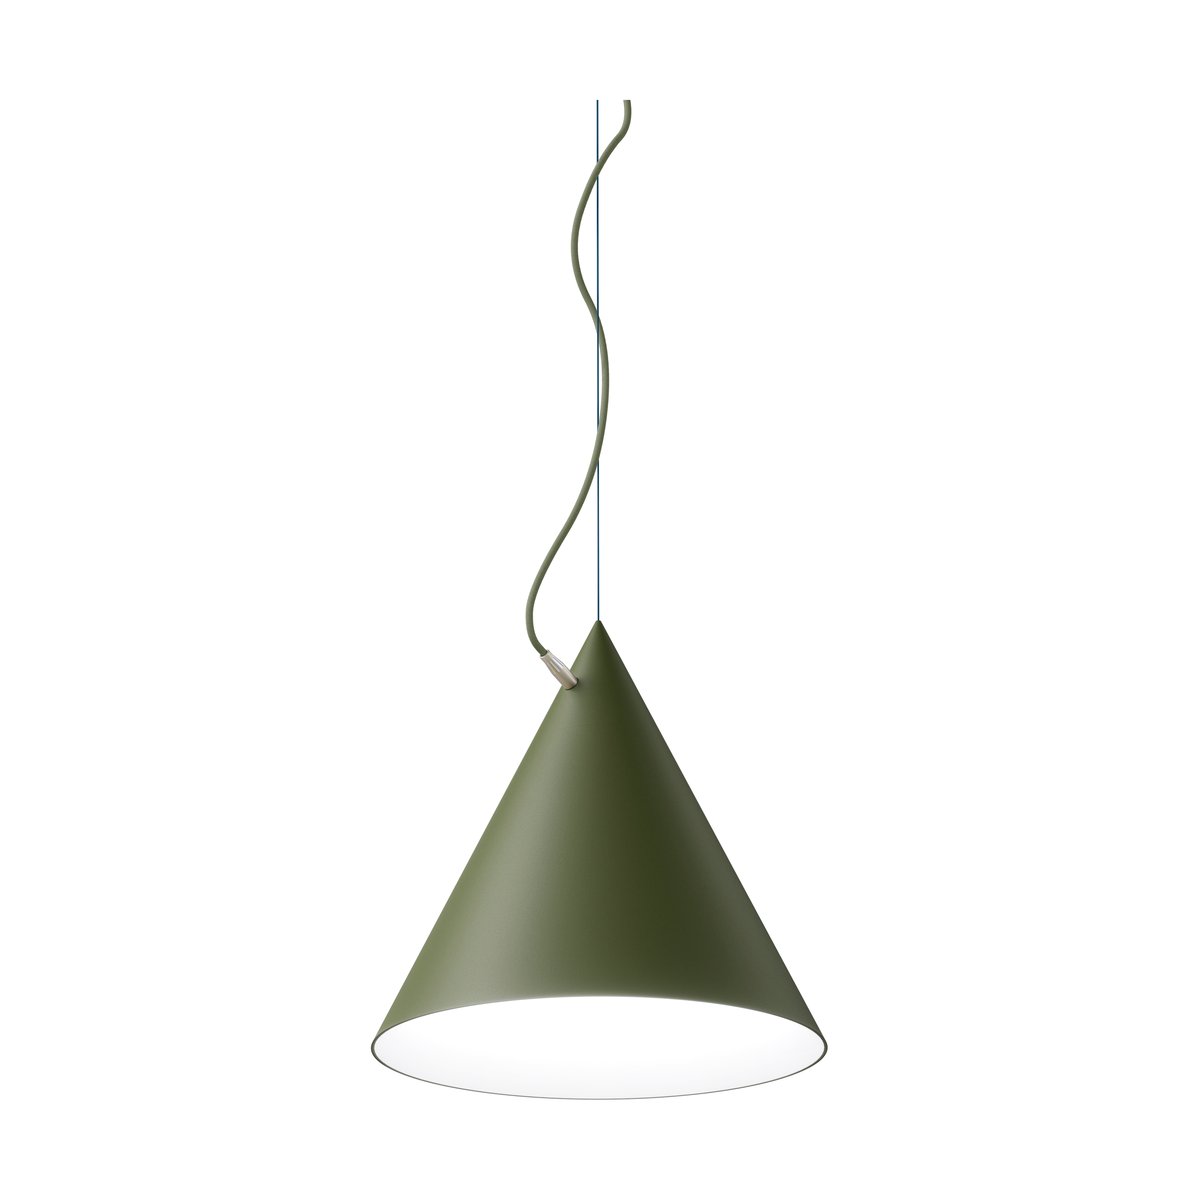 Noon Castor hanglamp 40 cm Militairgroen-groen-messing